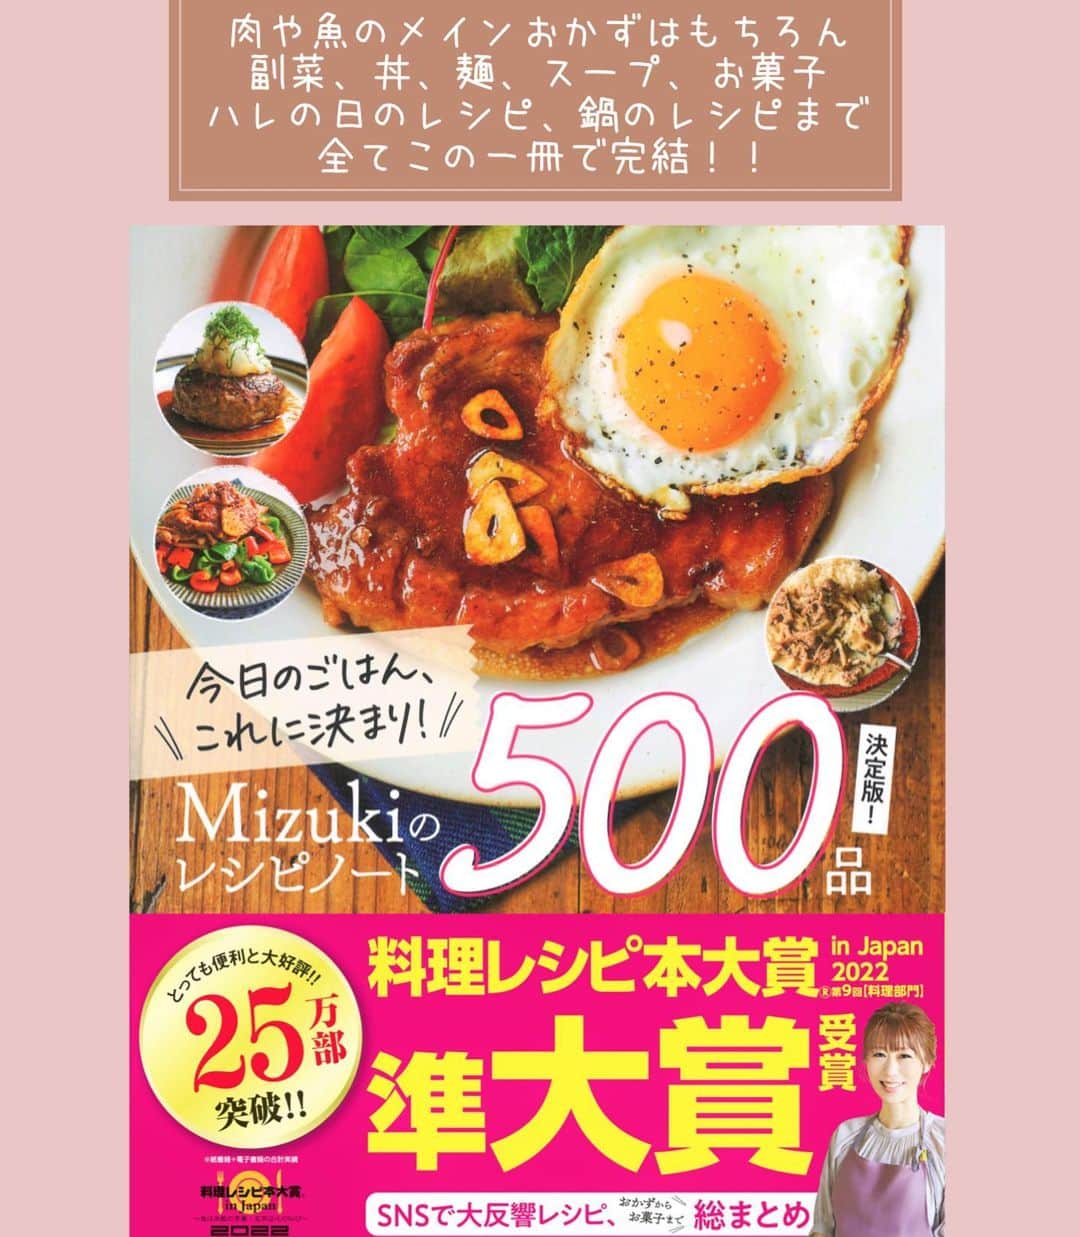 Mizuki【料理ブロガー・簡単レシピ】さんのインスタグラム写真 - (Mizuki【料理ブロガー・簡単レシピ】Instagram)「・味噌バターでコクうま💕 ⁡ ［#レシピ ］ ーーーーーーーーーーーーー 豚バラ白菜の味噌バター鍋 ーーーーーーーーーーーーー ⁡ ⁡ ⁡ おはようございます☺️ ⁡ 今日ご紹介させていただくのは \ 豚バラ白菜の味噌バター鍋 / (再掲載✨) ⁡ 味噌×バターのコクうまスープで お肉も野菜もたっぷり摂れる💕 白菜の代わりにキャベツを使ったり 他の具を加えてカサ増ししても🙆‍♀️ 〆は雑炊、又はラーメンが おすすめですよ〜😋 ⁡ とっても簡単にできるので よかったらお試し下さいね✨ ⁡ ⁡ ⁡ ⋱⋰ ⋱⋰ ⋱⋰ ⋱⋰ ⋱⋰ ⋱⋰ ⋱⋰ 📍簡単・時短・節約レシピ更新中  Threadsもこちらから▼ @mizuki_31cafe ⁡ 📍謎の暮らし＆変なライブ垢 @mizuki_kurashi ⋱⋰ ⋱⋰ ⋱⋰ ⋱⋰ ⋱⋰ ⋱⋰ ⋱⋰ ⁡ ⁡ ⁡ ＿＿＿＿＿＿＿＿＿＿＿＿＿＿＿＿＿＿＿ 【2人分】 豚バラ薄切り肉...200g 白菜...1/6個(350g) ニラ...1/2束 にんにく...1かけ ●水...600ml ●味噌...大3 ●みりん...大2 ●鶏がらスープ...大1/2 バター...15g 粗挽き黒こしょう...少々 ⁡ 1.豚肉とニラは5cm長さに切る。白菜の芯は1cm幅、葉はざく切りにする。にんにくは薄切りにする。 2.鍋に●とにんにくを入れて中火で煮立て、豚肉を加えてほぐす。続けて白菜も加え、蓋をして5分煮る。 3.仕上げにニラを加えてひと煮立ちさせ、バターをのせて黒こしょうを振る。 ￣￣￣￣￣￣￣￣￣￣￣￣￣￣￣￣￣￣￣ ⁡ ⁡ ⁡ 《ポイント》 ♦︎豚肉の代わりに鶏肉(一口大に切る)で作ってもおいしいです♩白菜の代わりにキャベツを使用しても♩ ♦︎きのこやもやし、油揚げやコーンなど追加しても◎ ♦︎味噌は合わせ味噌を使用しています♩ ⁡ ⁡ ⁡ ⁡ ⁡ ⁡ ⋱⋰ ⋱⋰ ⋱⋰ ⋱⋰ ⋱⋰ ⋱⋰ ⋱⋰  愛用している調理器具・器など   #楽天ROOMに載せてます ‎𐩢𐩺  (ハイライトから飛べます🕊️) ⋱⋰ ⋱⋰ ⋱⋰ ⋱⋰ ⋱⋰ ⋱⋰ ⋱⋰ ⁡ ⁡ ⁡ ⁡ ⁡ ✼••┈┈┈┈┈••✼••┈┈┈┈┈••✼ 今日のごはんこれに決まり！ ‎𓊆#Mizukiのレシピノート 500品𓊇 ✼••┈┈┈┈┈••✼••┈┈┈┈┈••✼ ⁡ ˗ˏˋ おかげさまで25万部突破 ˎˊ˗ 料理レシピ本大賞準大賞を受賞しました✨ ⁡ 6000点の中からレシピを厳選し まさかの【500レシピ掲載】 肉や魚のメインおかずはもちろん 副菜、丼、麺、スープ、お菓子 ハレの日のレシピ、鍋のレシピまで 全てこの一冊で完結 𓌉◯𓇋 (全国の書店・ネット書店で発売中) ⁡ ⁡ ⁡ ⁡ ⁡ ⁡ #豚バラ #豚肉レシピ #白菜 #白菜レシピ  #鍋 #鍋料理 #鍋レシピ  #節約料理  #簡単料理  #時短料理 #mizukiレシピ  #時短レシピ #節約レシピ #簡単レシピ」11月18日 7時00分 - mizuki_31cafe